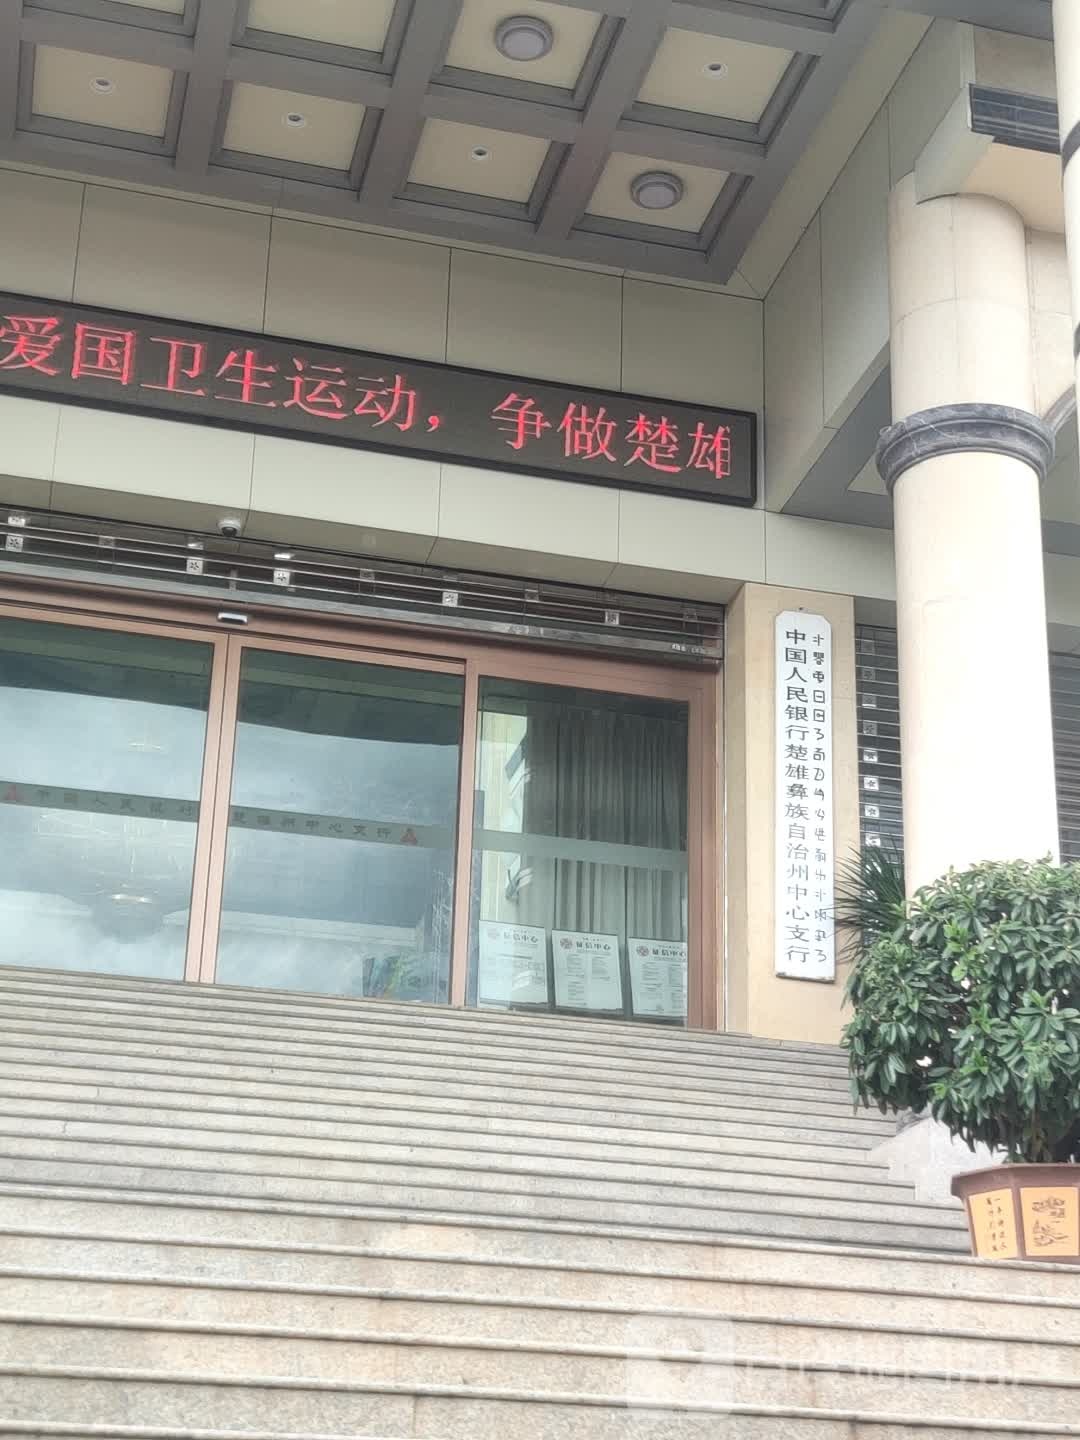 中国人民银行(楚雄彝族自治州中心支行)